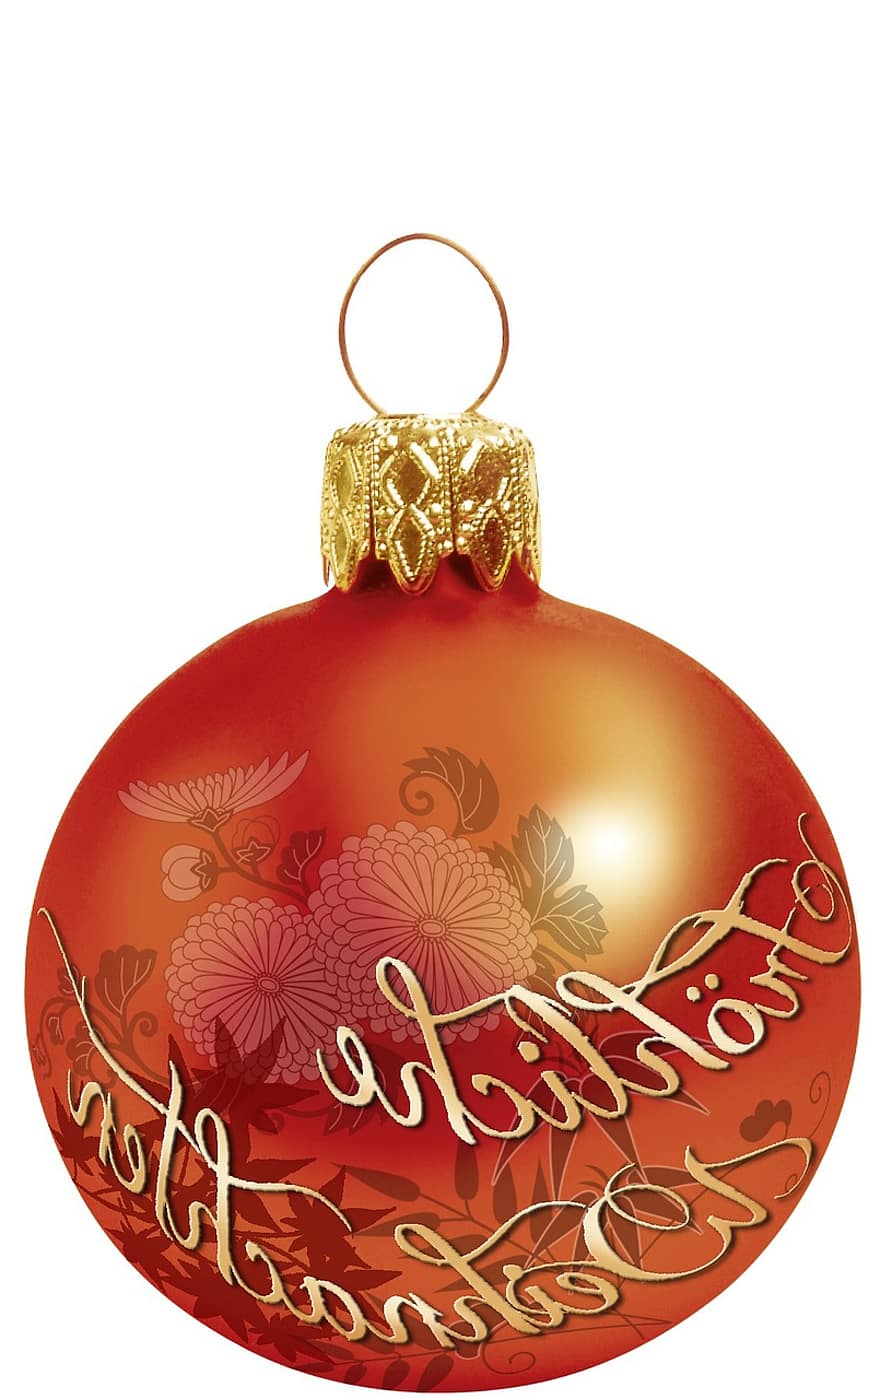 グラフィック、クリスマスの飾り、設計、切り取る、赤、オレンジ、Fernöstlich、日本人、ゴールド、手書き、書道